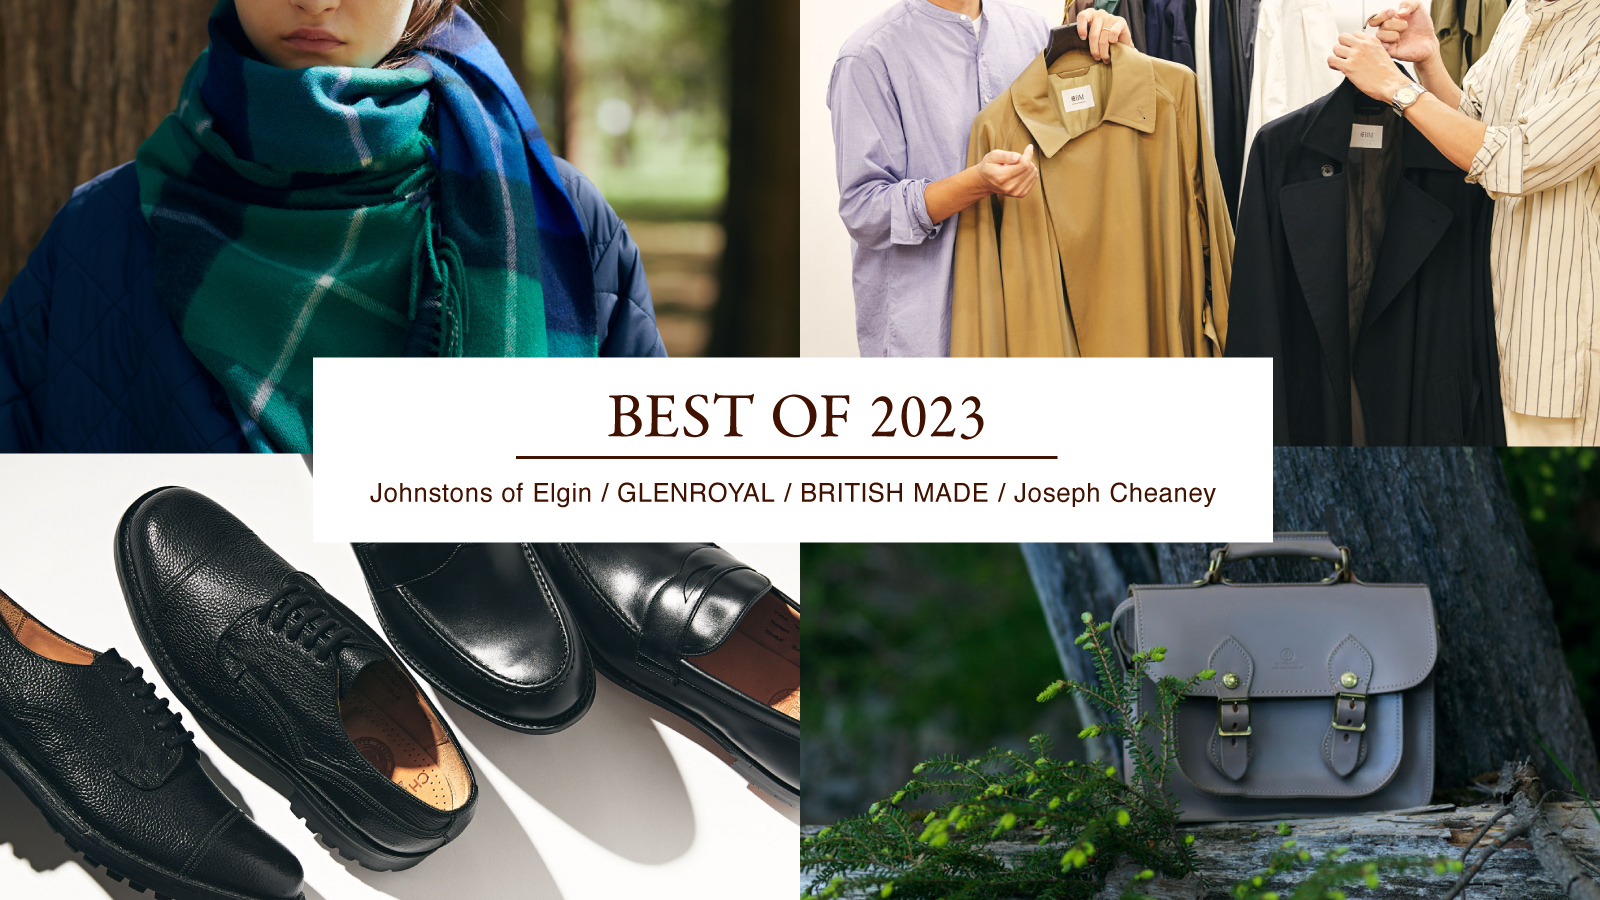 《BEST OF 2023》ブランド別、年間ランキング｜ジョンストンズ オブ エルガン、グレンロイヤル、ジョセフ チーニー他
